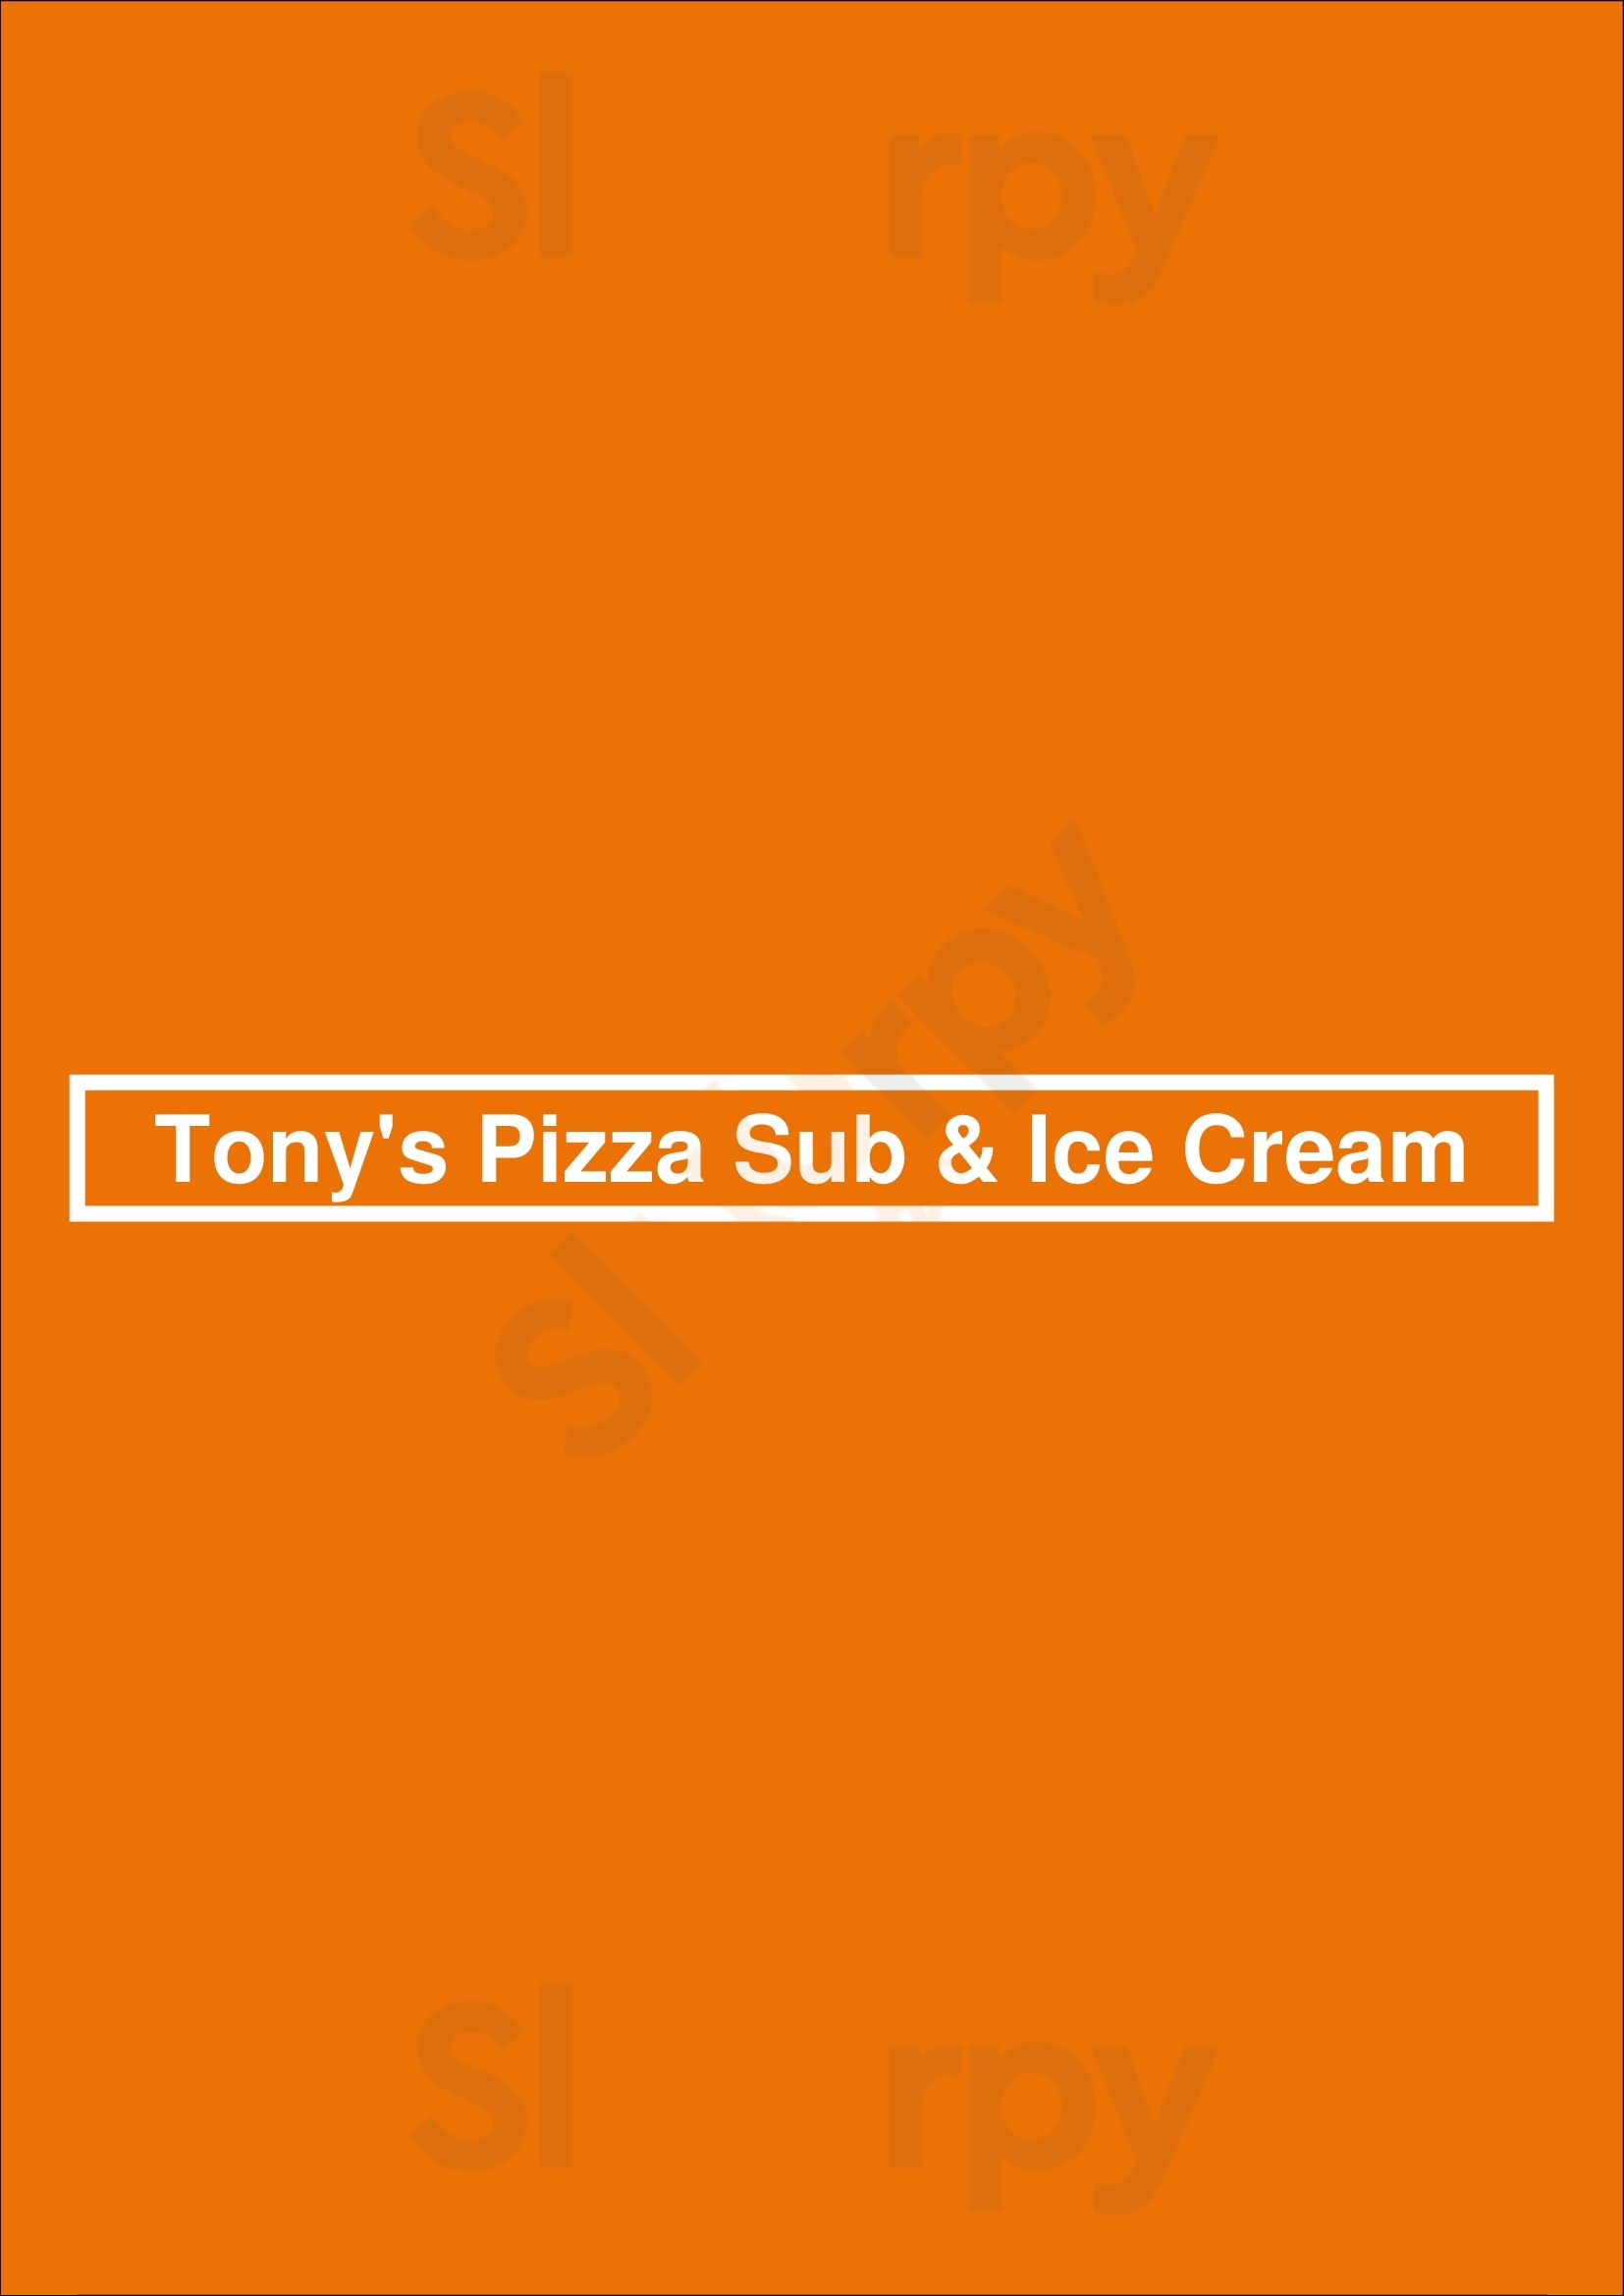 Tony's Pizza Sub & Ice Cream Kingston Menu - 1